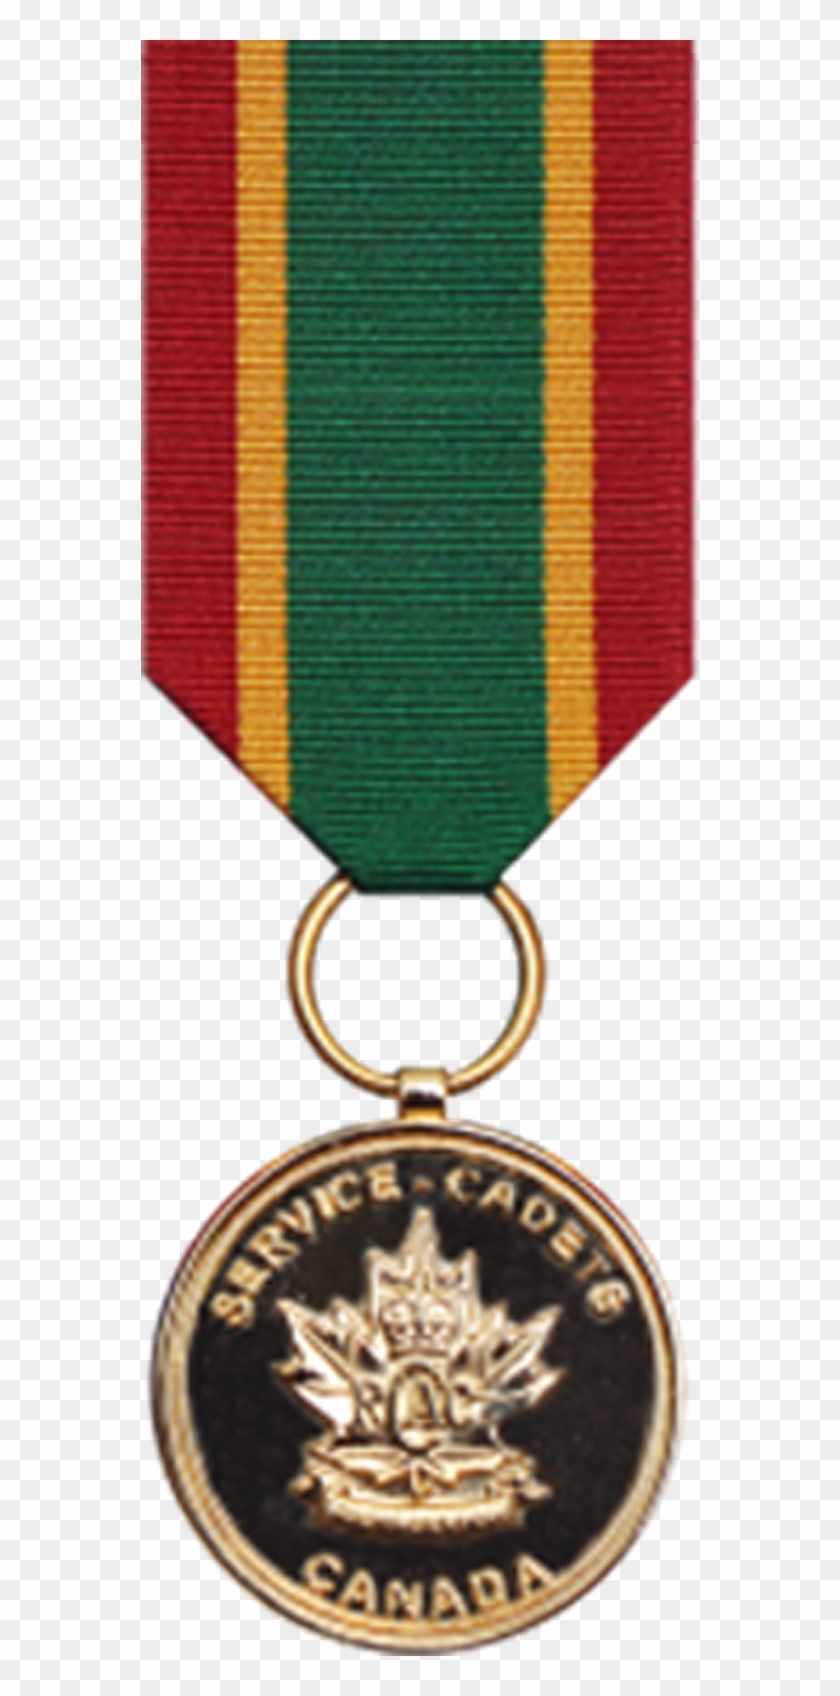 Army Cadet Service Medal - Cadet #1164722